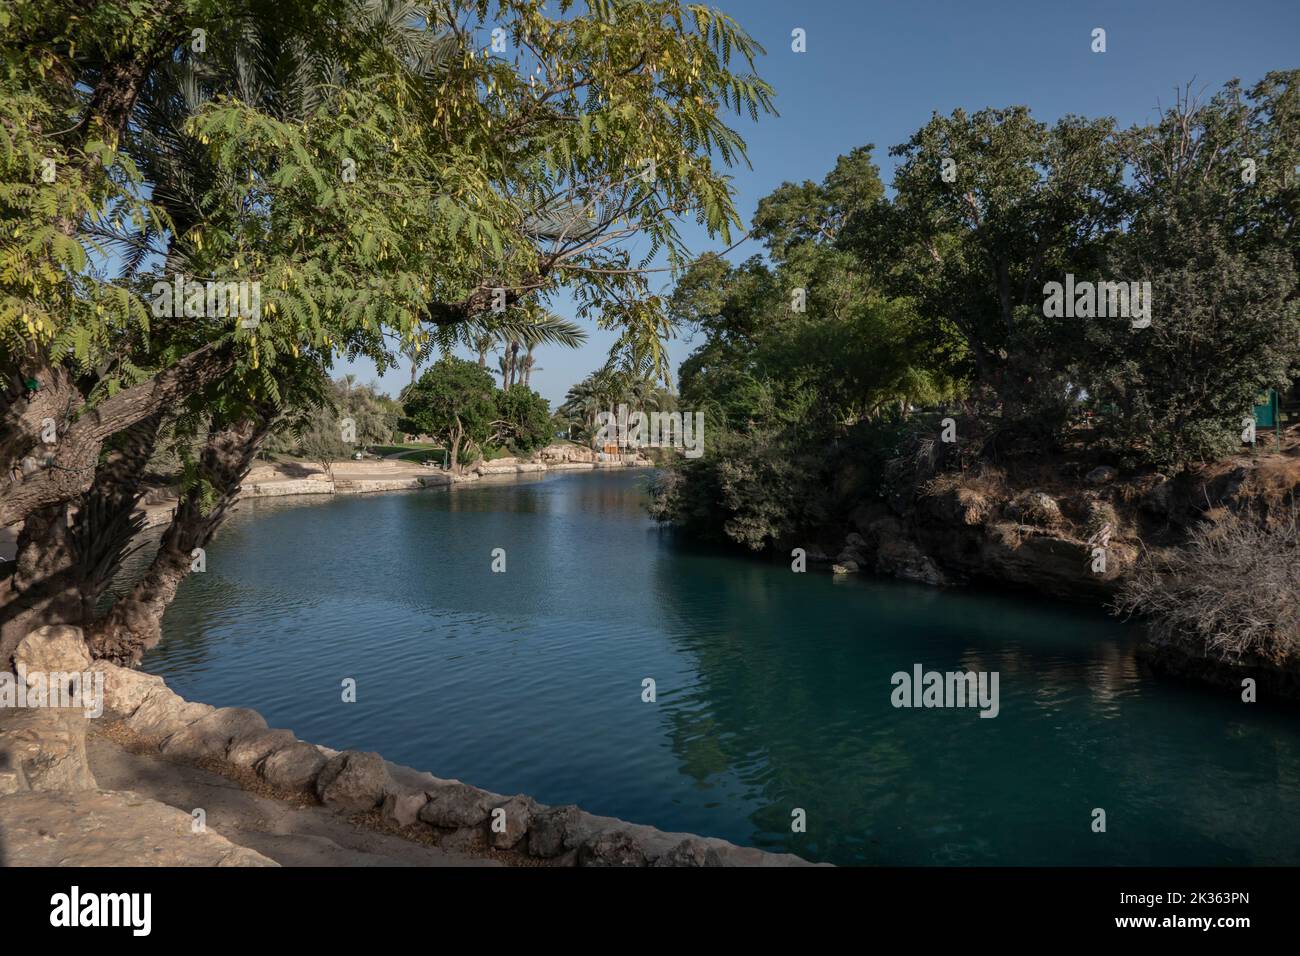 Vue sur une piscine d'eau de source naturelle du ruisseau Amal qui traverse le parc national de Gan Hashlosha également connu sous son nom arabe Sakhne en Israël Banque D'Images